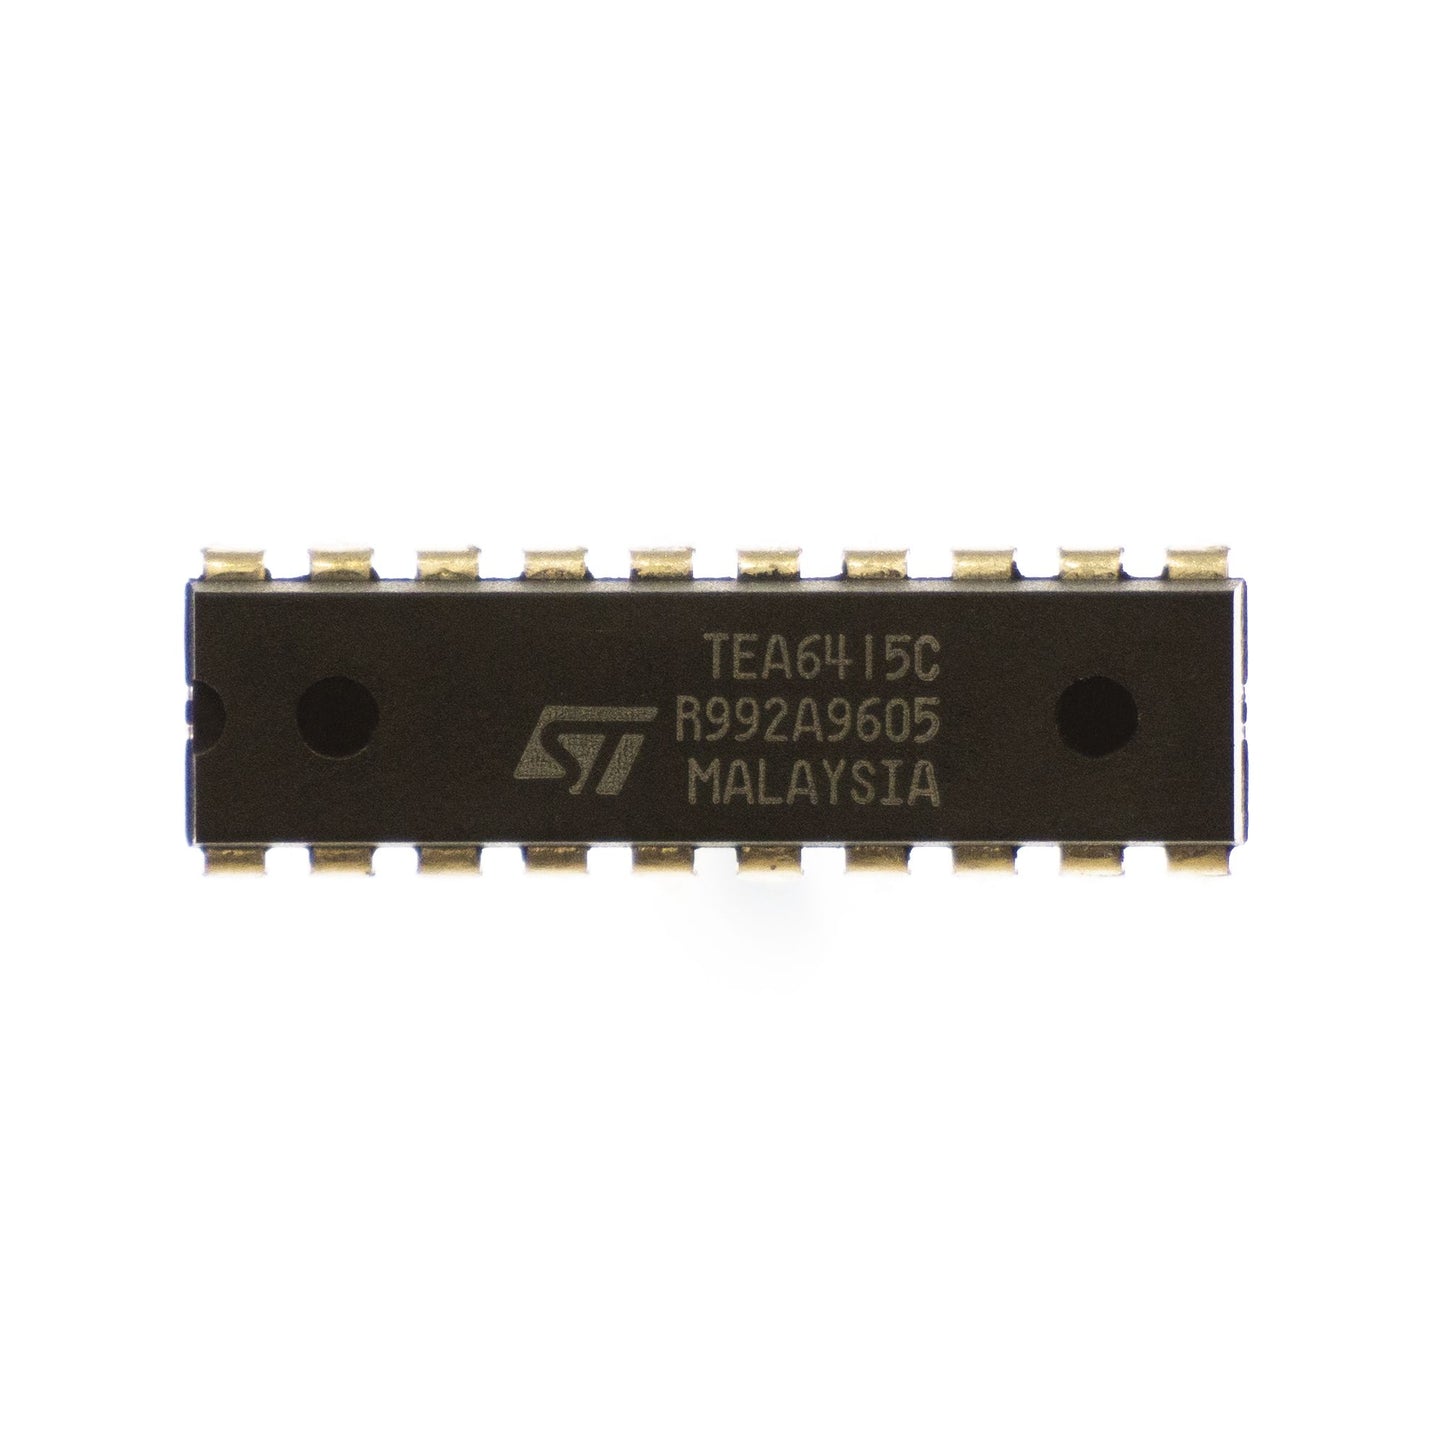 STMicroelectronics TEA6415C circuito integrato, transistor, componente elettronico, 20 contatti